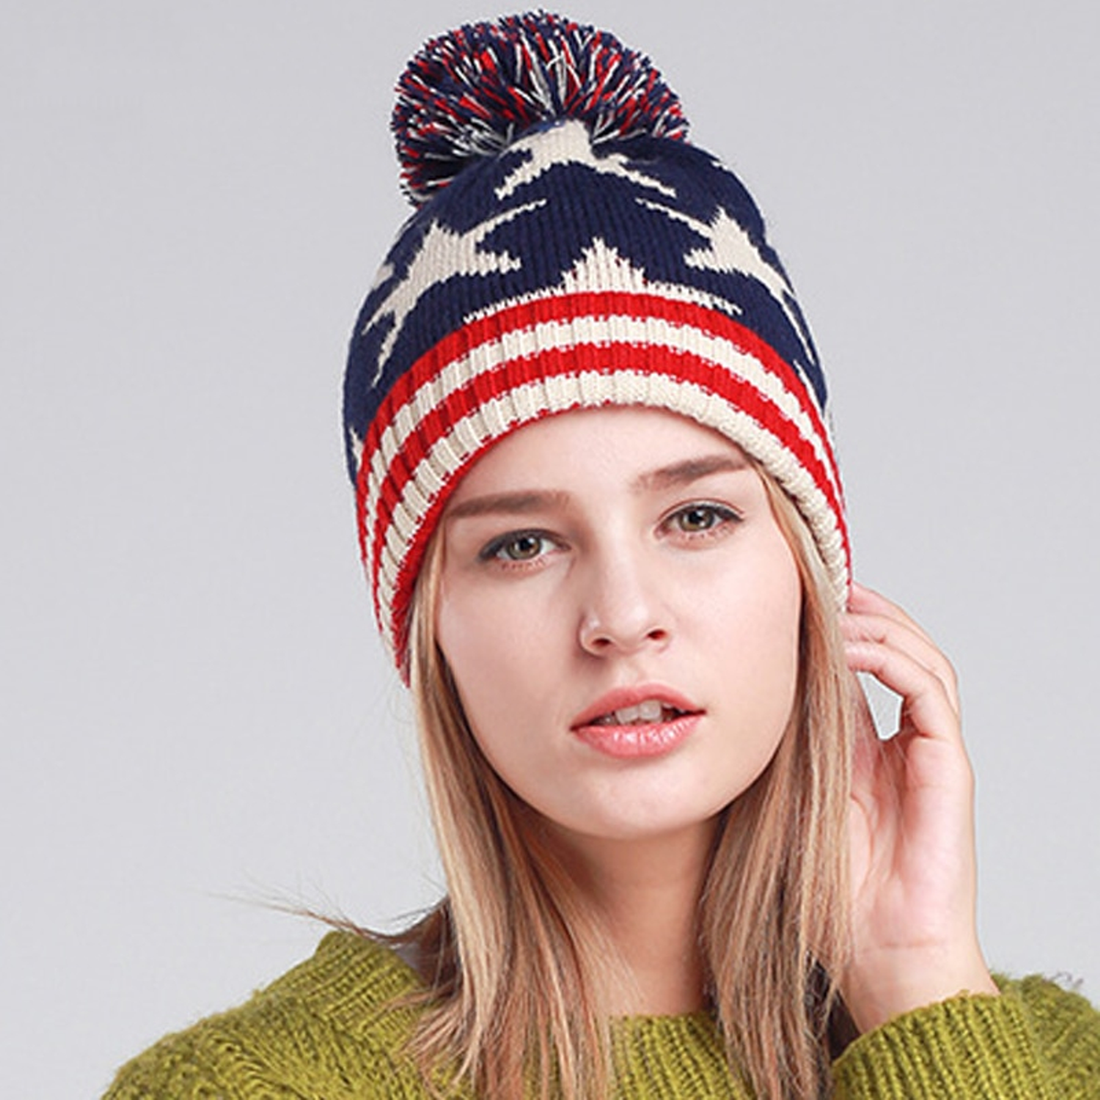 Women's Winter Warm Stretchy Hat With Pompom